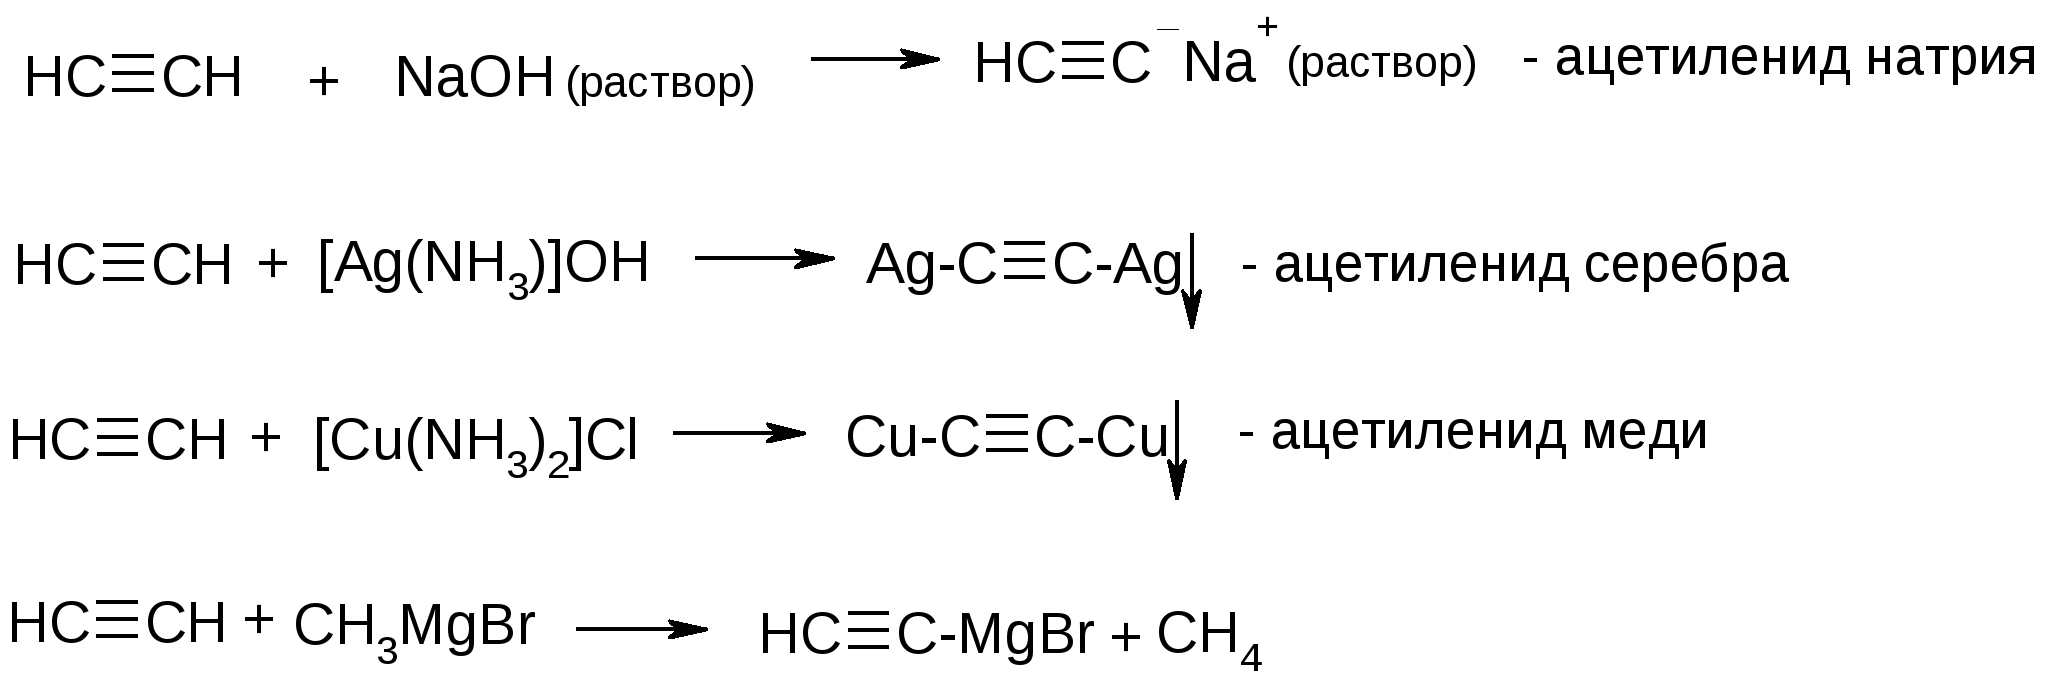 Naoh водный реакции. Ацетиленид серебра получение реакция. Получение ацетиленида натрия реакция. Ацетилен плюс гидроксид натрия. Ацетиленид натрия получение.